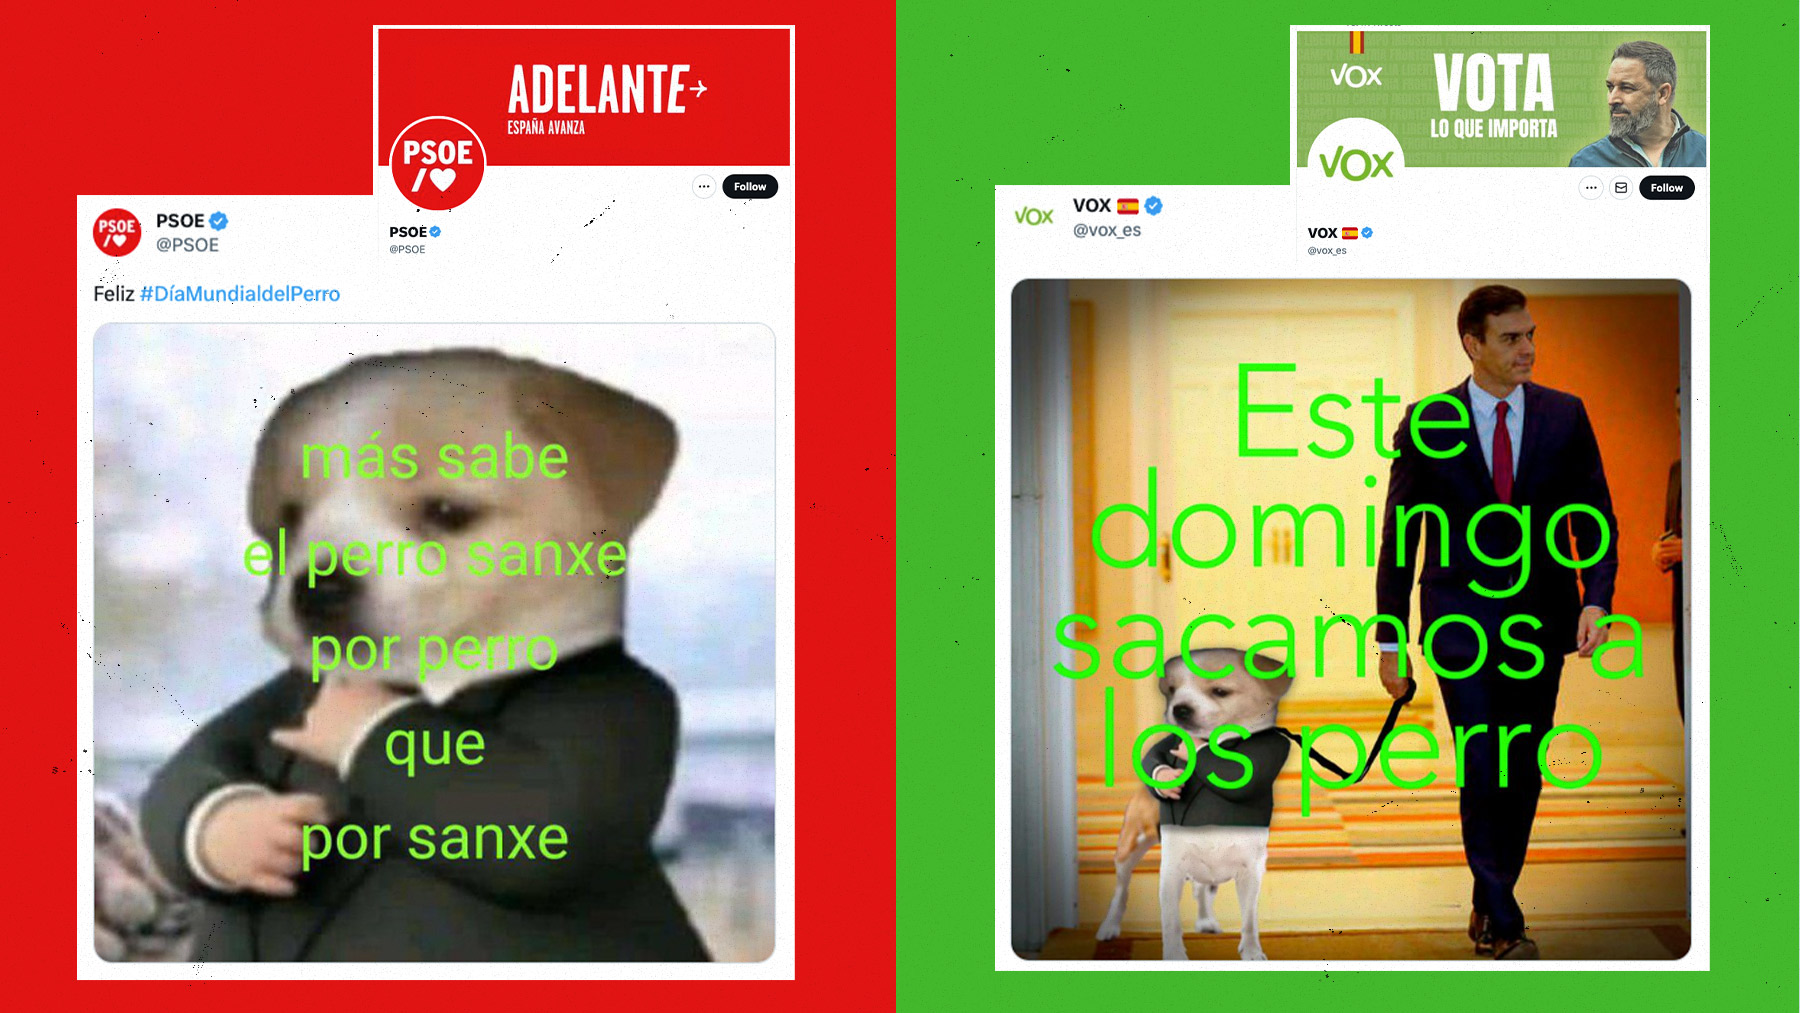 Vox trolea al «Perro Sanxe» del PSOE: «Este domingo sacamos a los perros» de Moncloa.